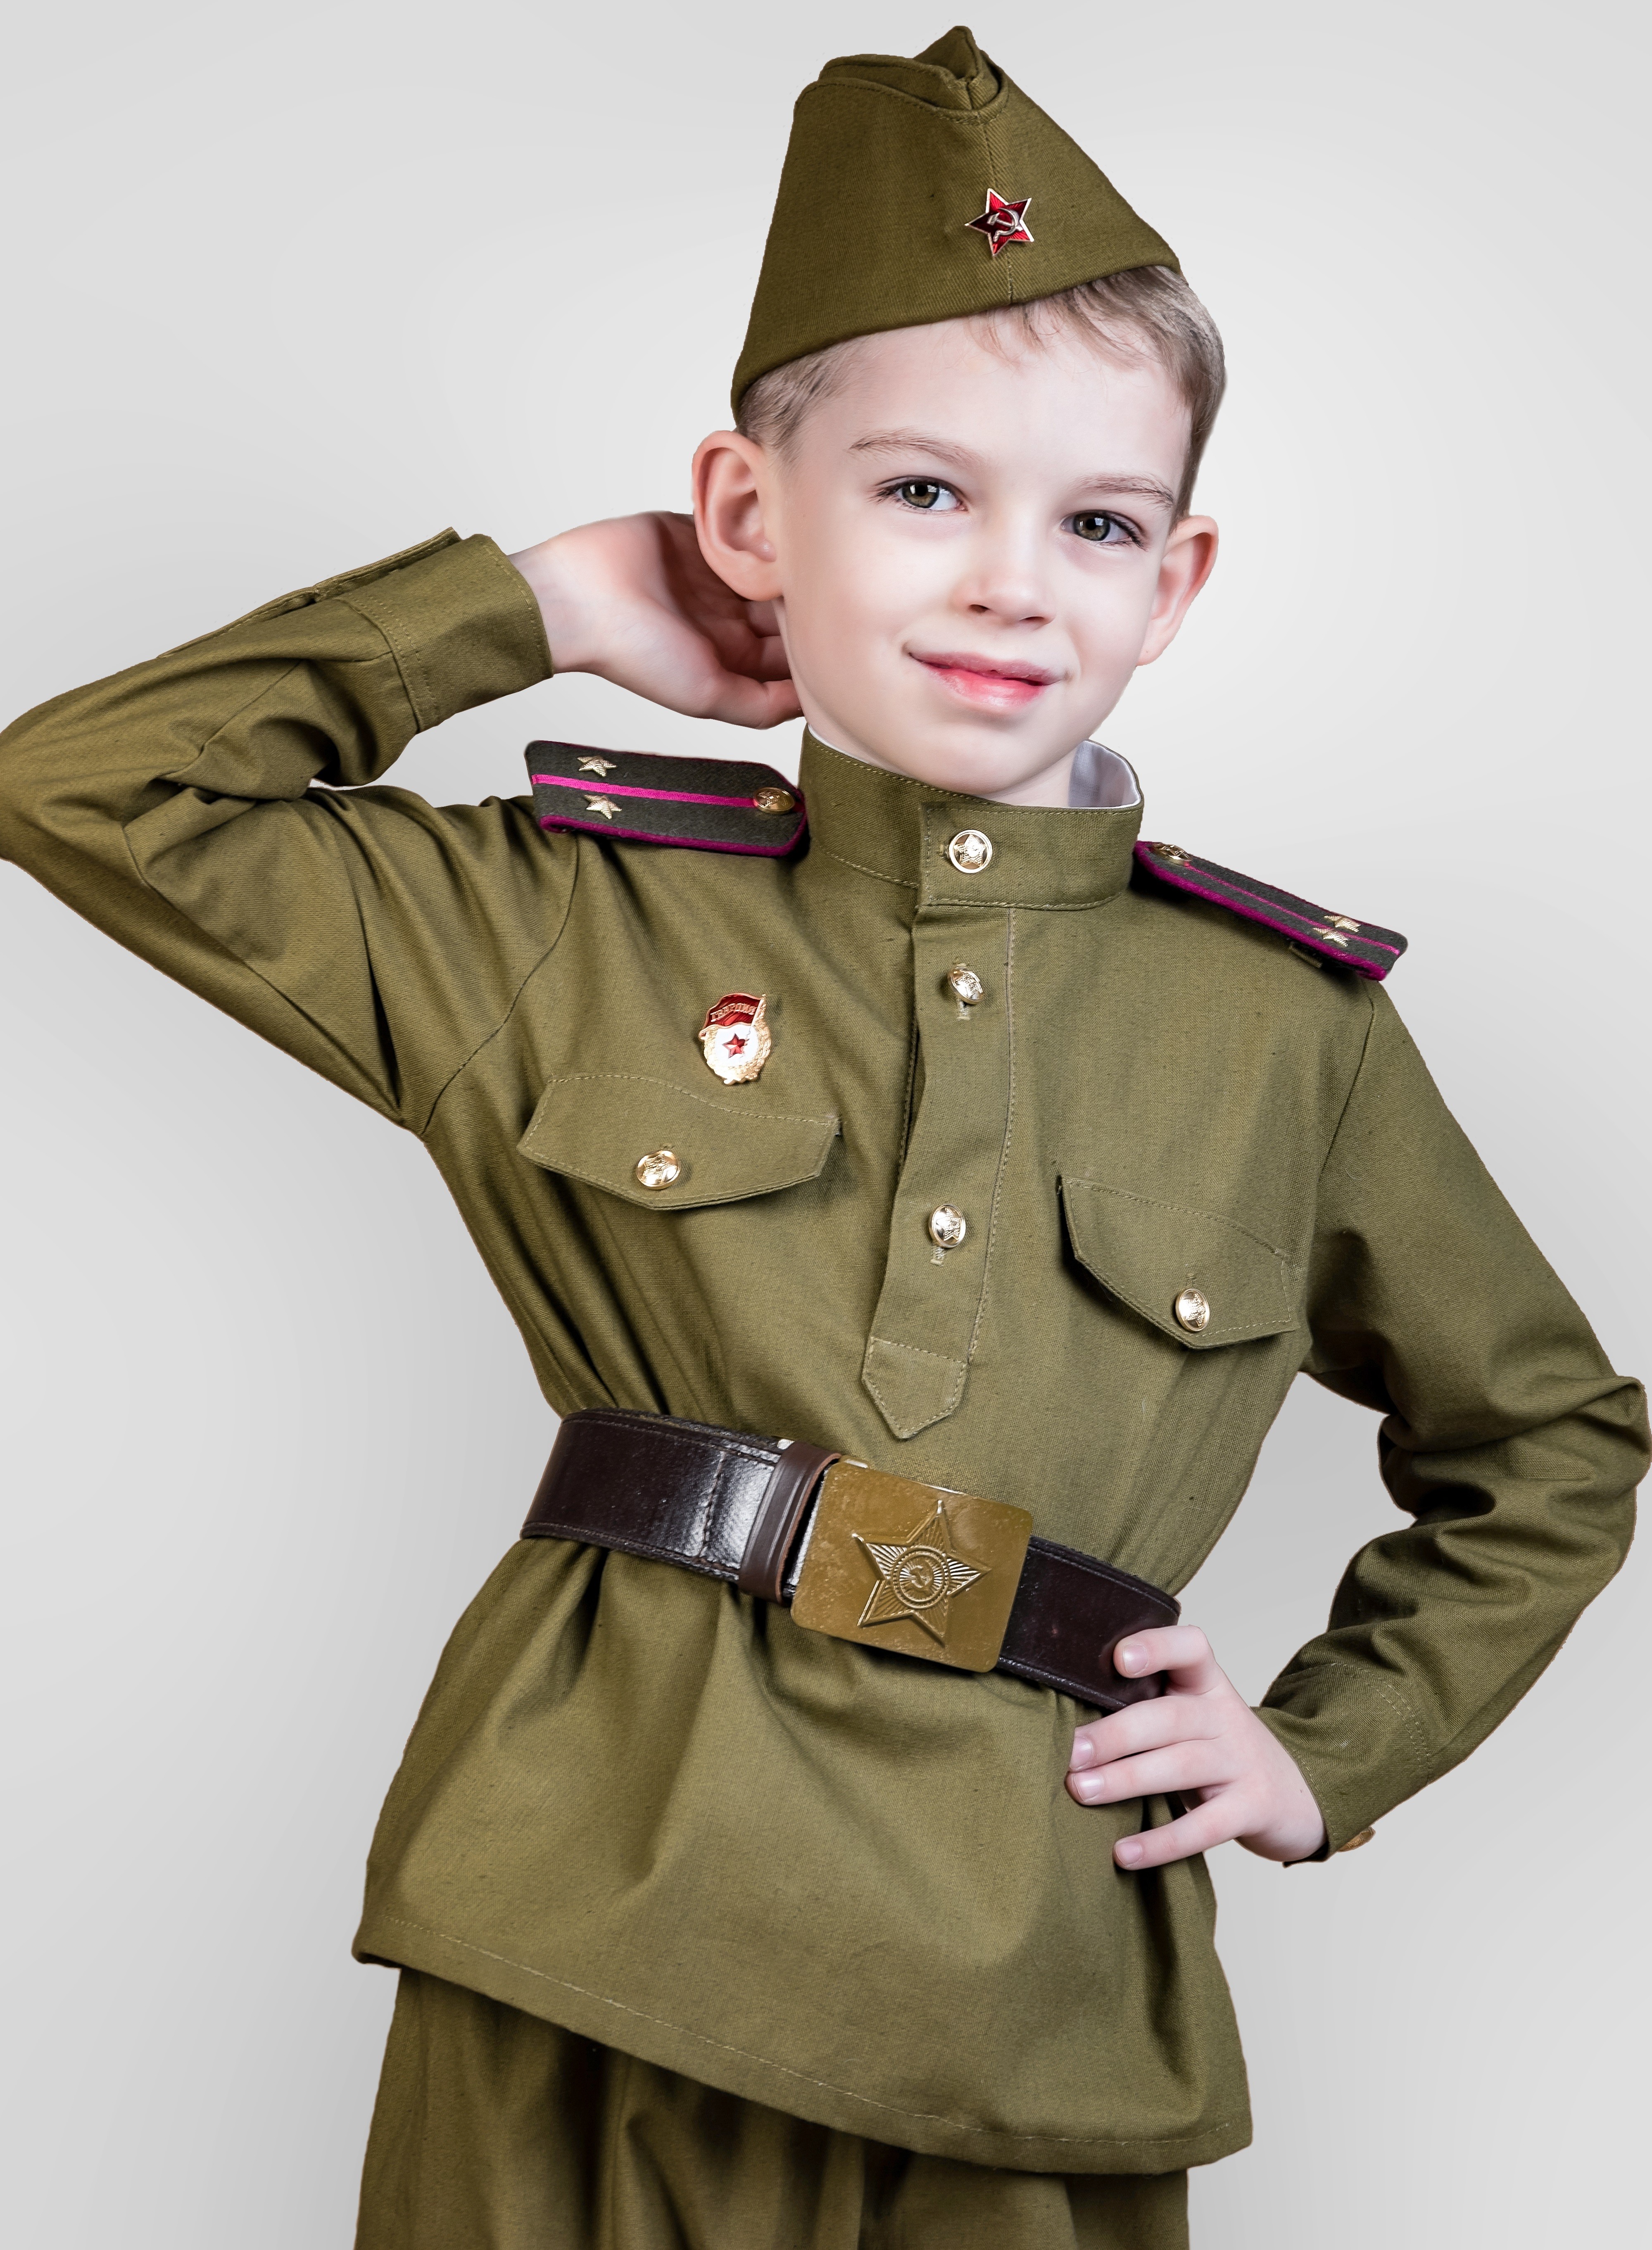 Где можно купить армейский. Дети в военной форме. Детская Военная форма. Солдатская форма для детей. Военнаяыорма для ребенка.